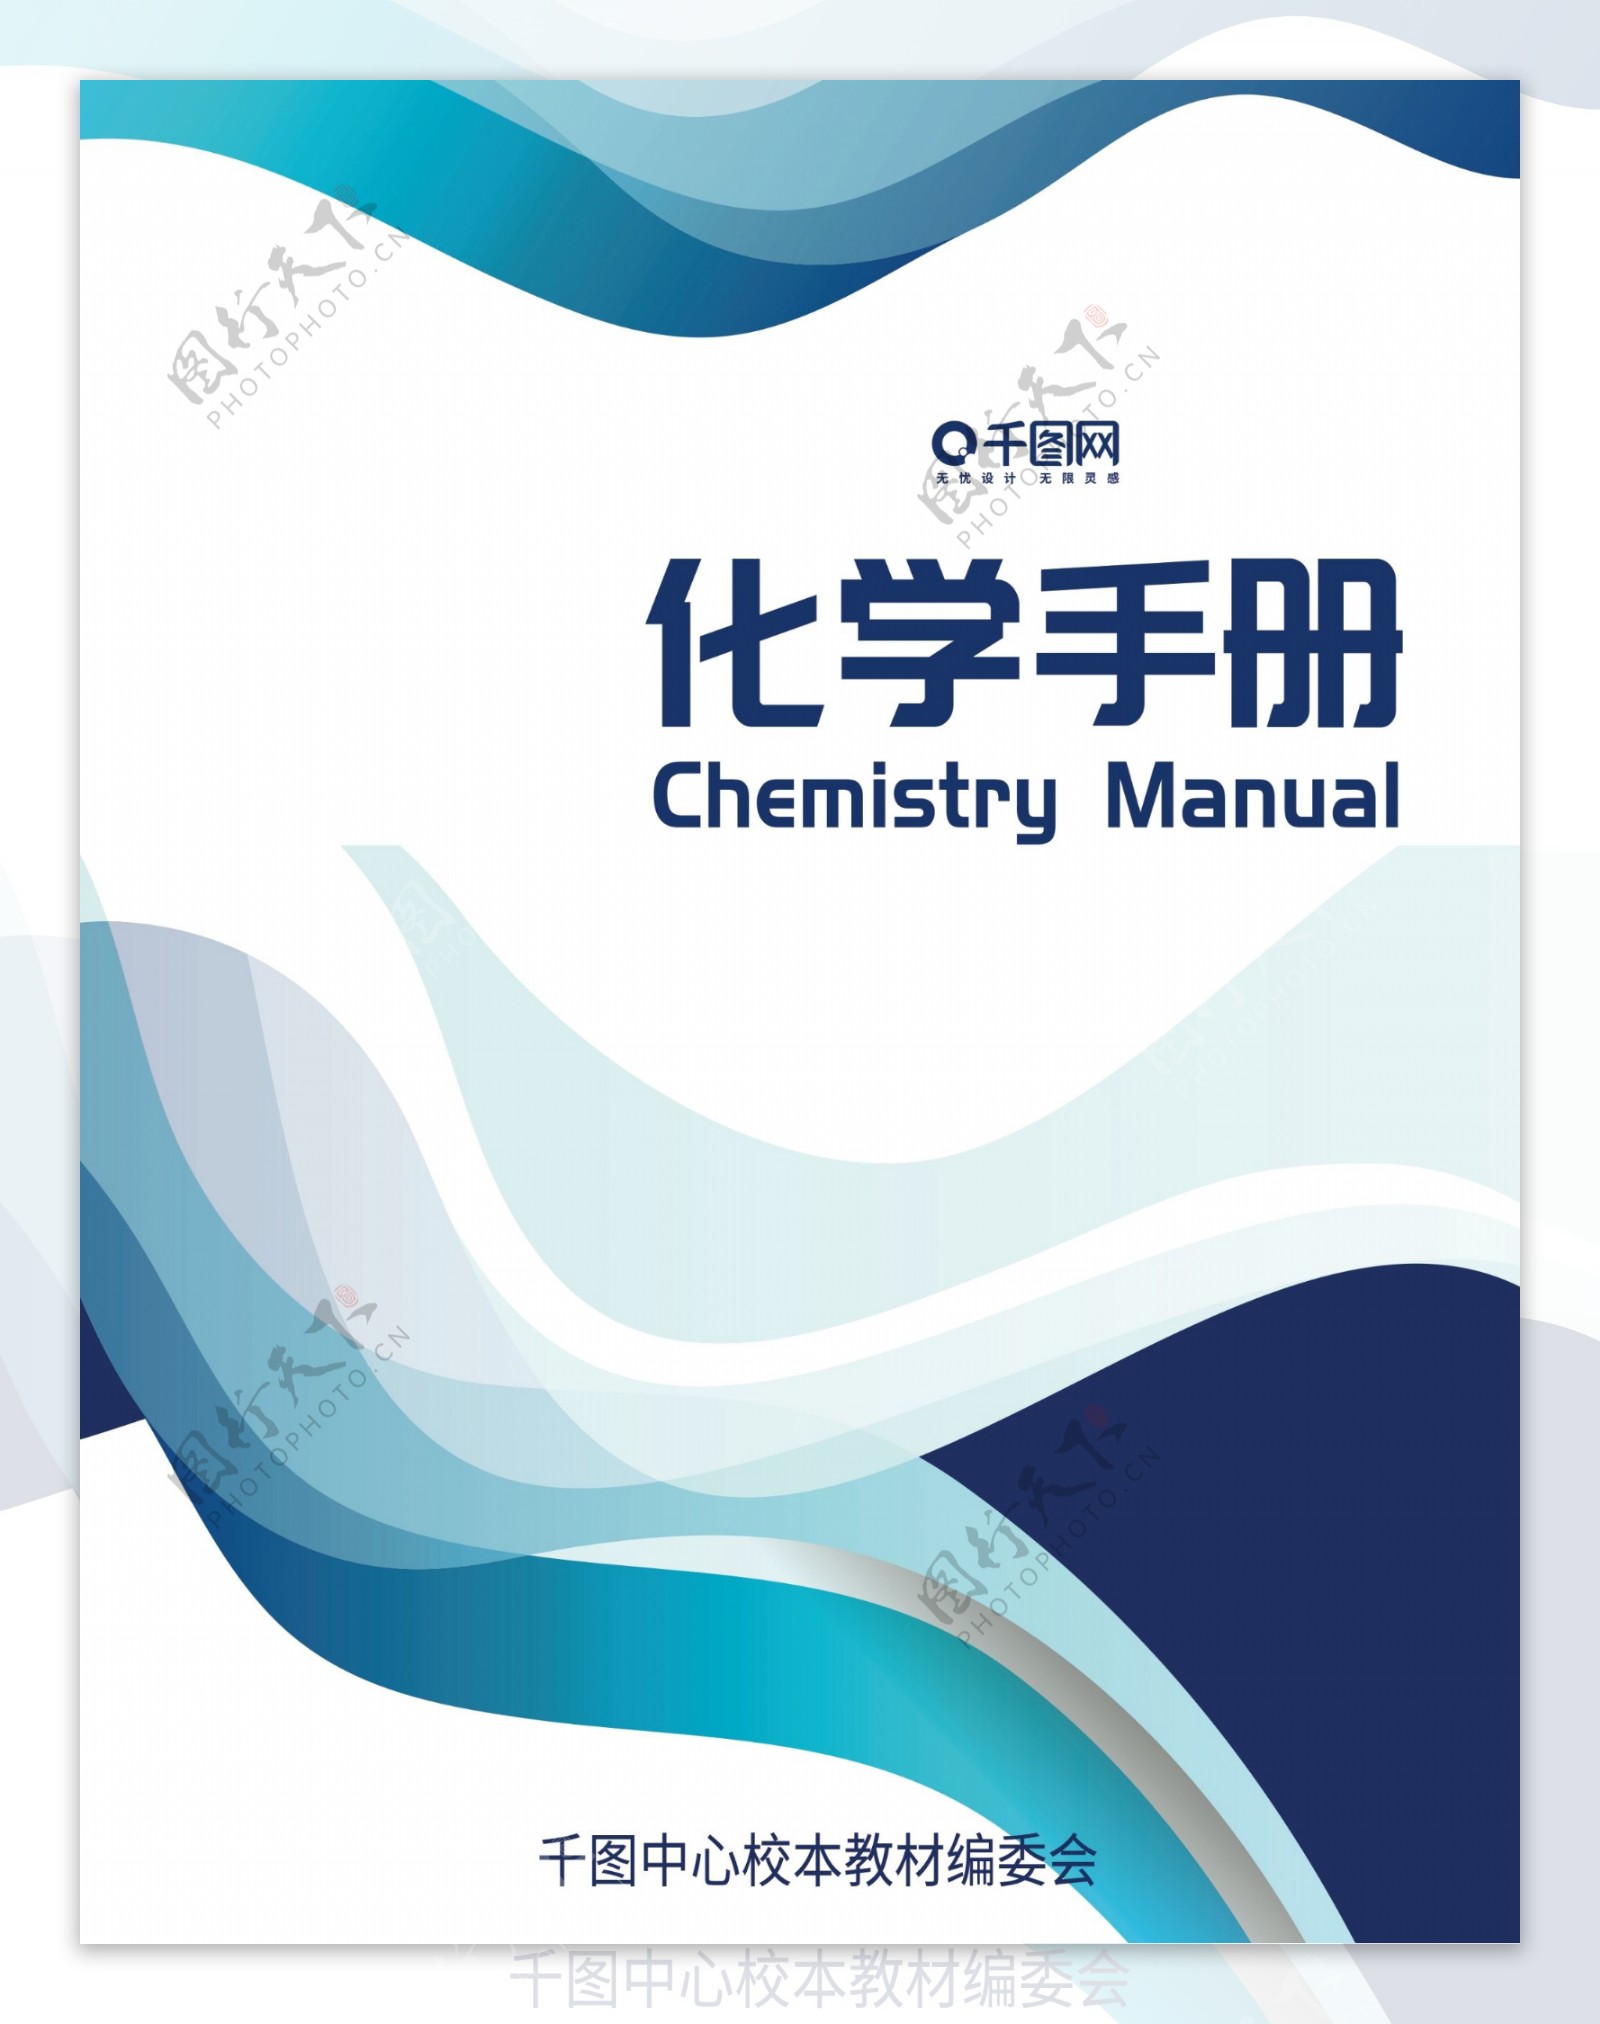 创意蓝色简约线条化学教材封面设计